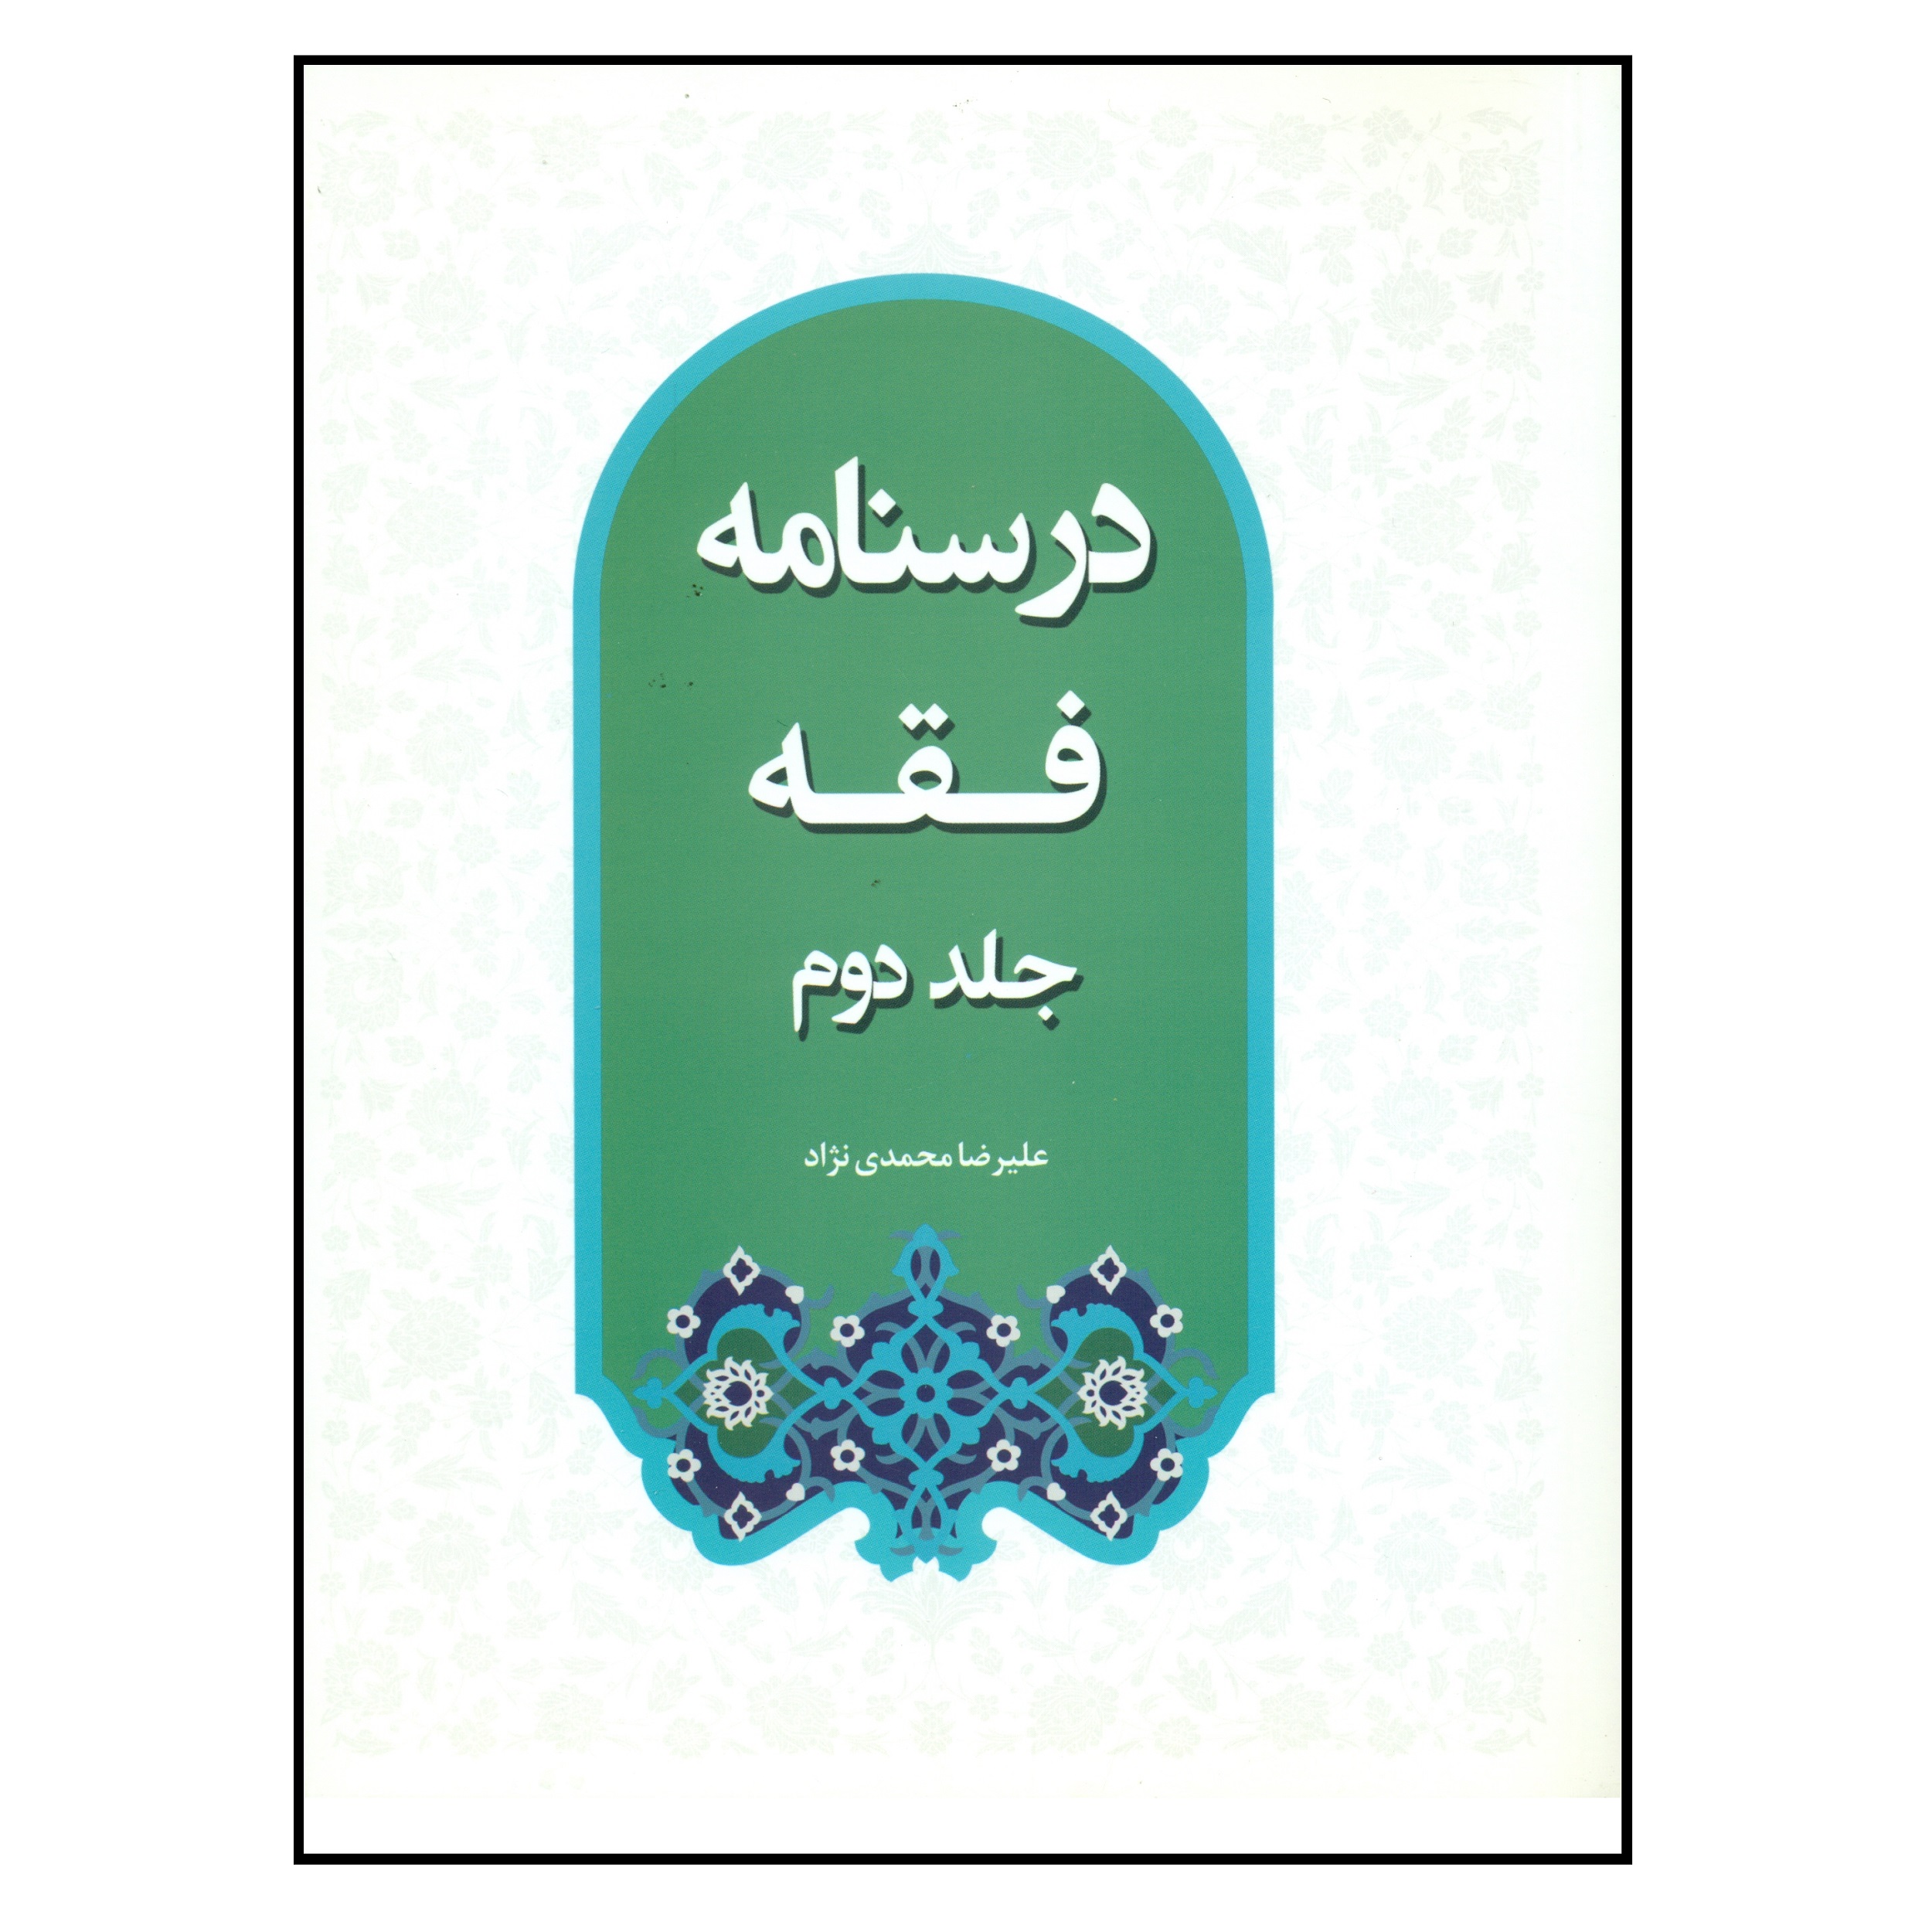 کتاب درسنامه فقه اثر علیرضا محمدی نژاد انتشارات مرکز هاجر جلد 2